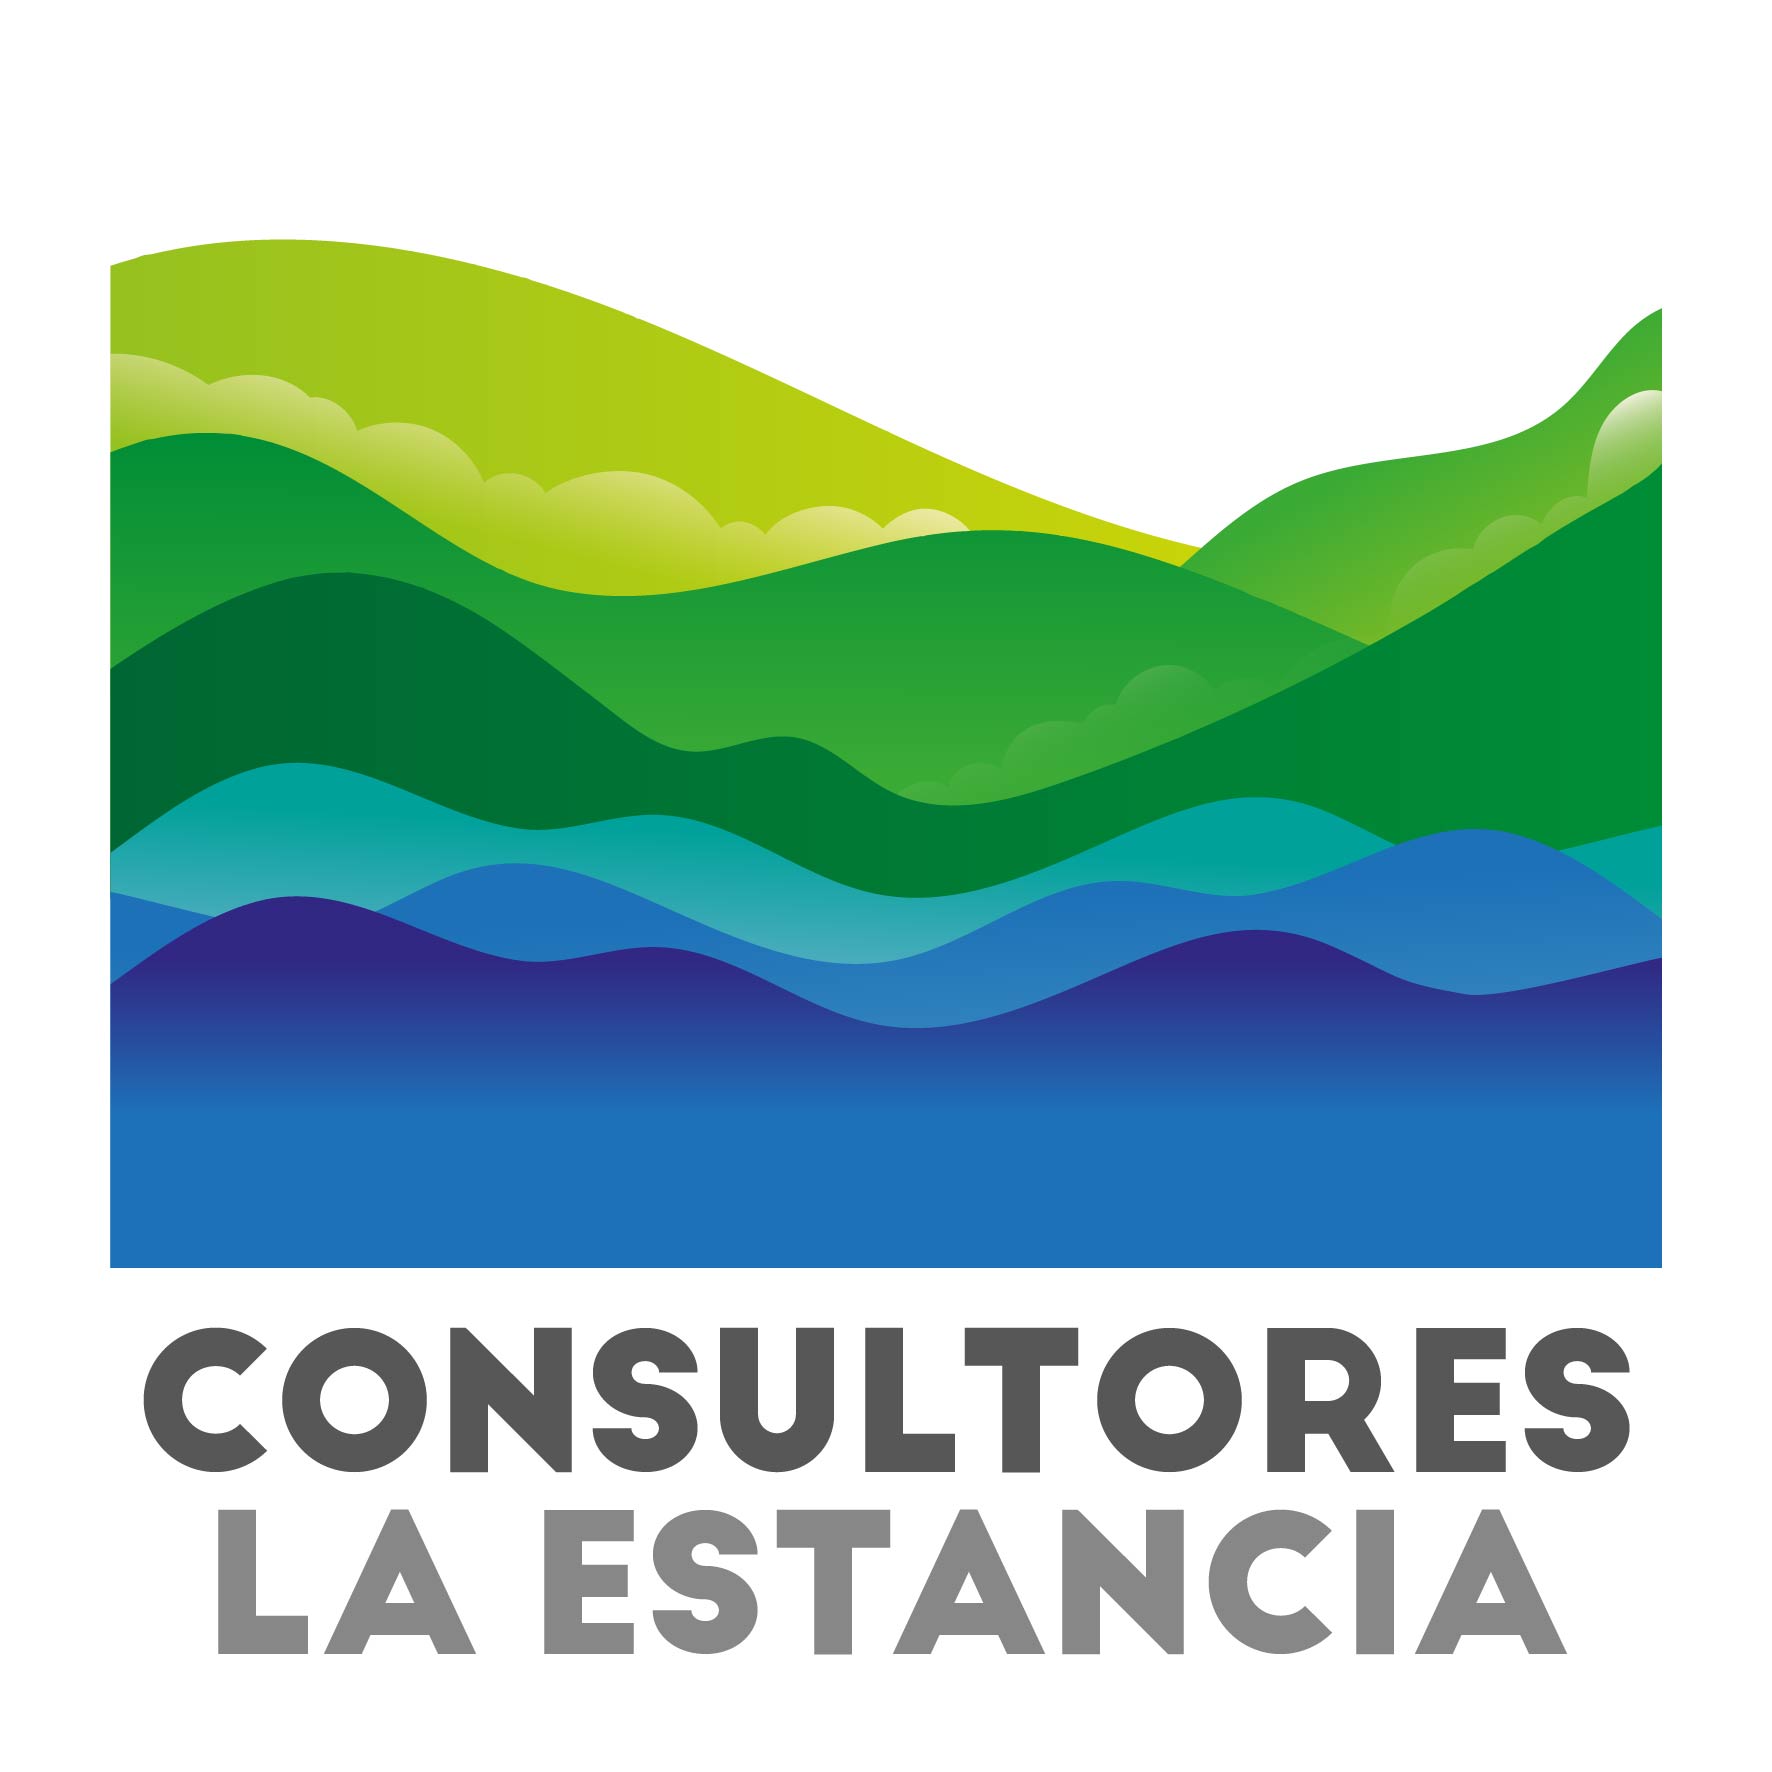 http://chiloe.digital/rutapatrimonialguaitecas/wp-content/uploads/sites/31/2022/10/Logotipo-Consultores-La-Estancia.jpg